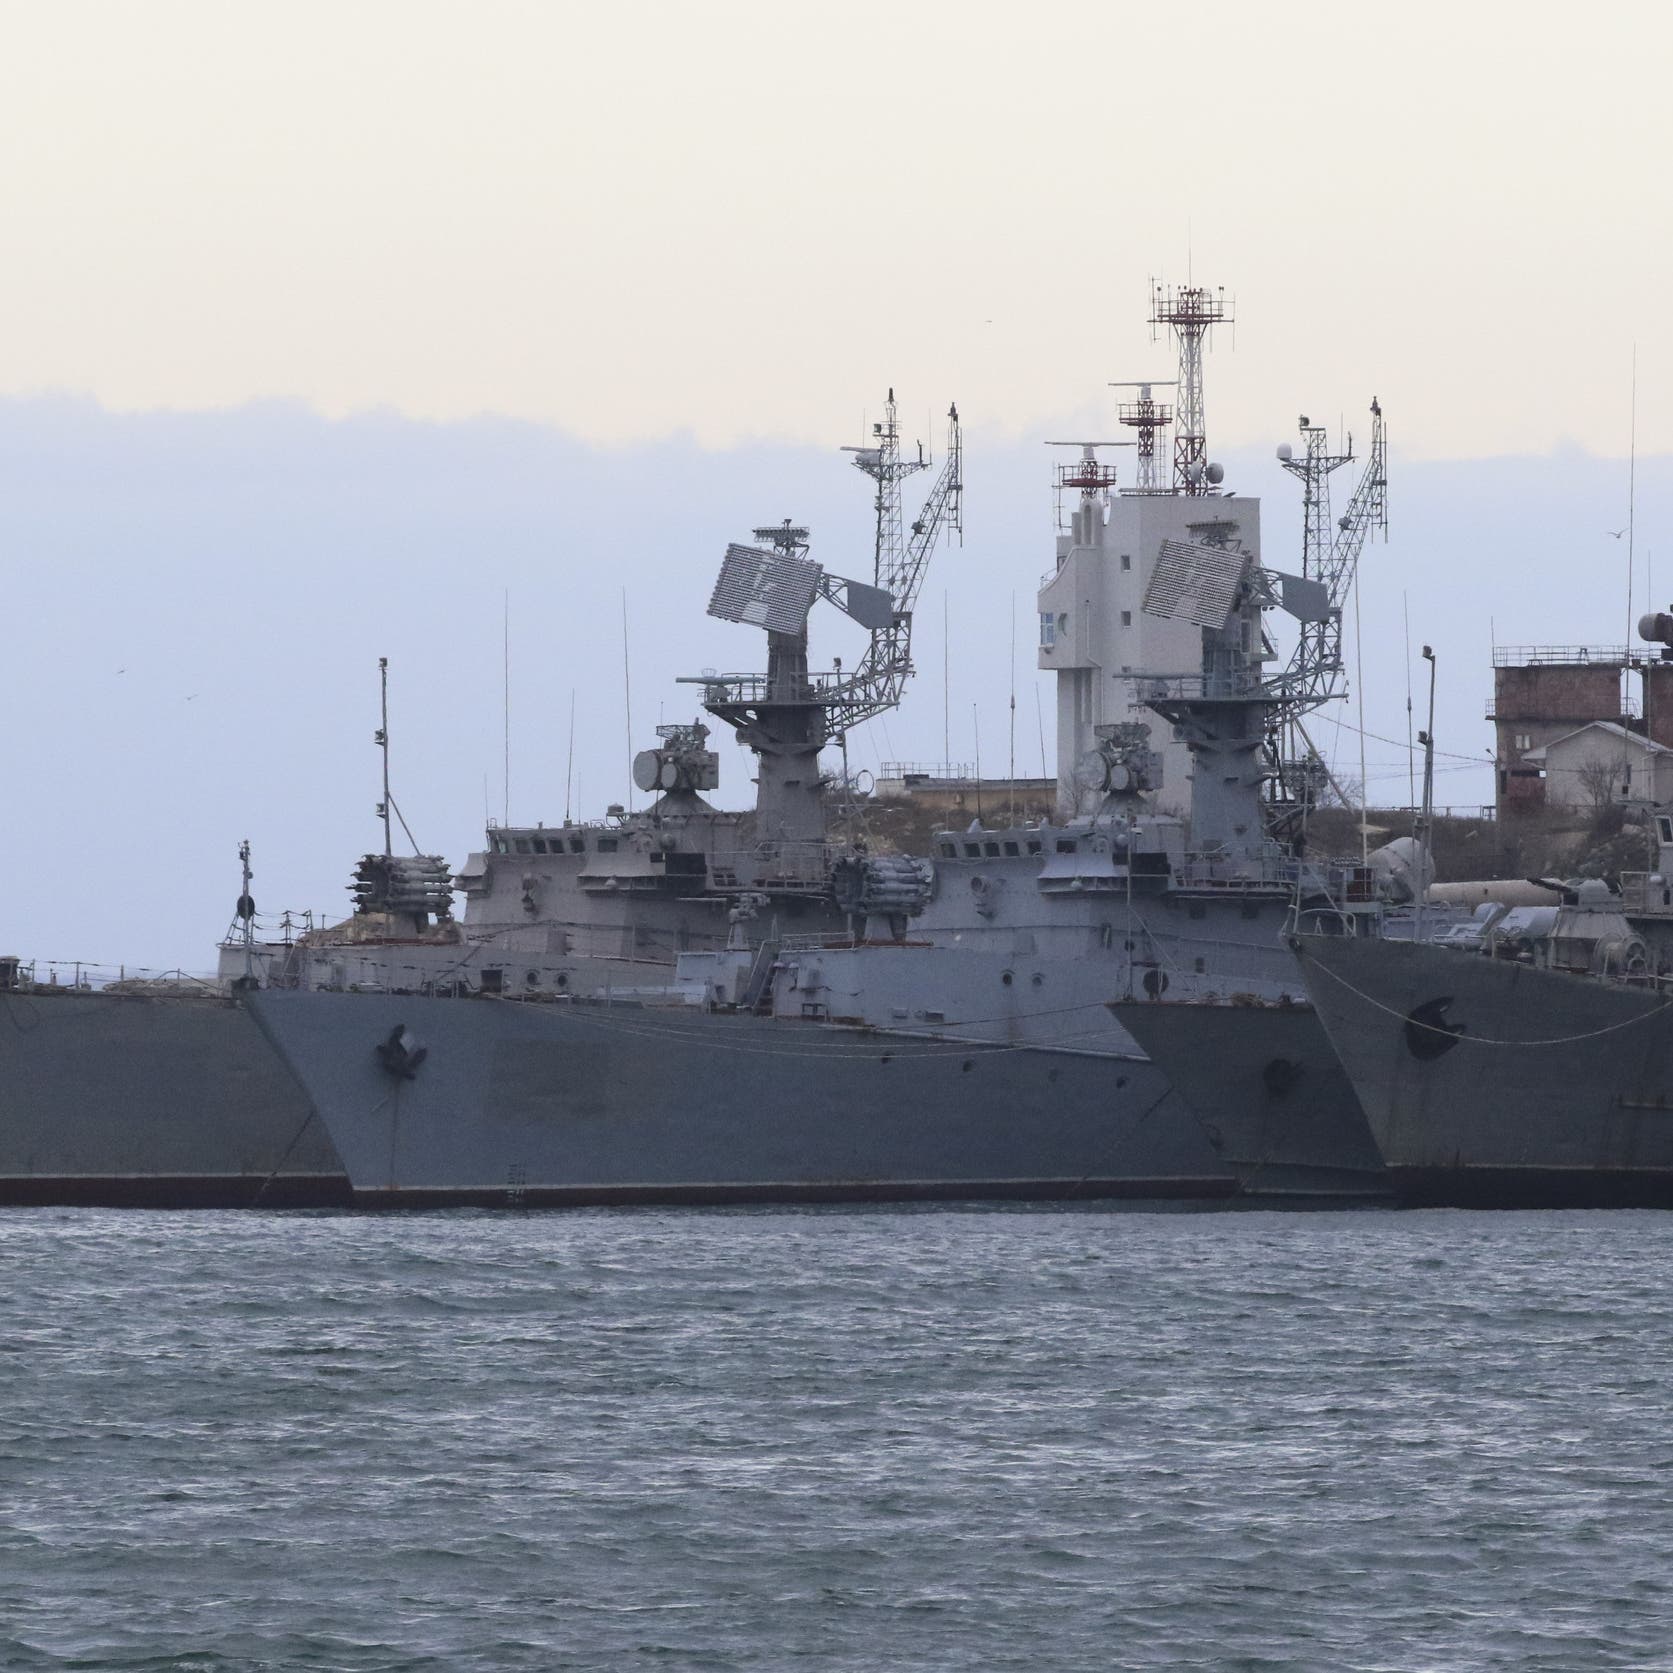 موسكو: دخول سفينة أوكرانية لمضيق كيرتش استفزازي